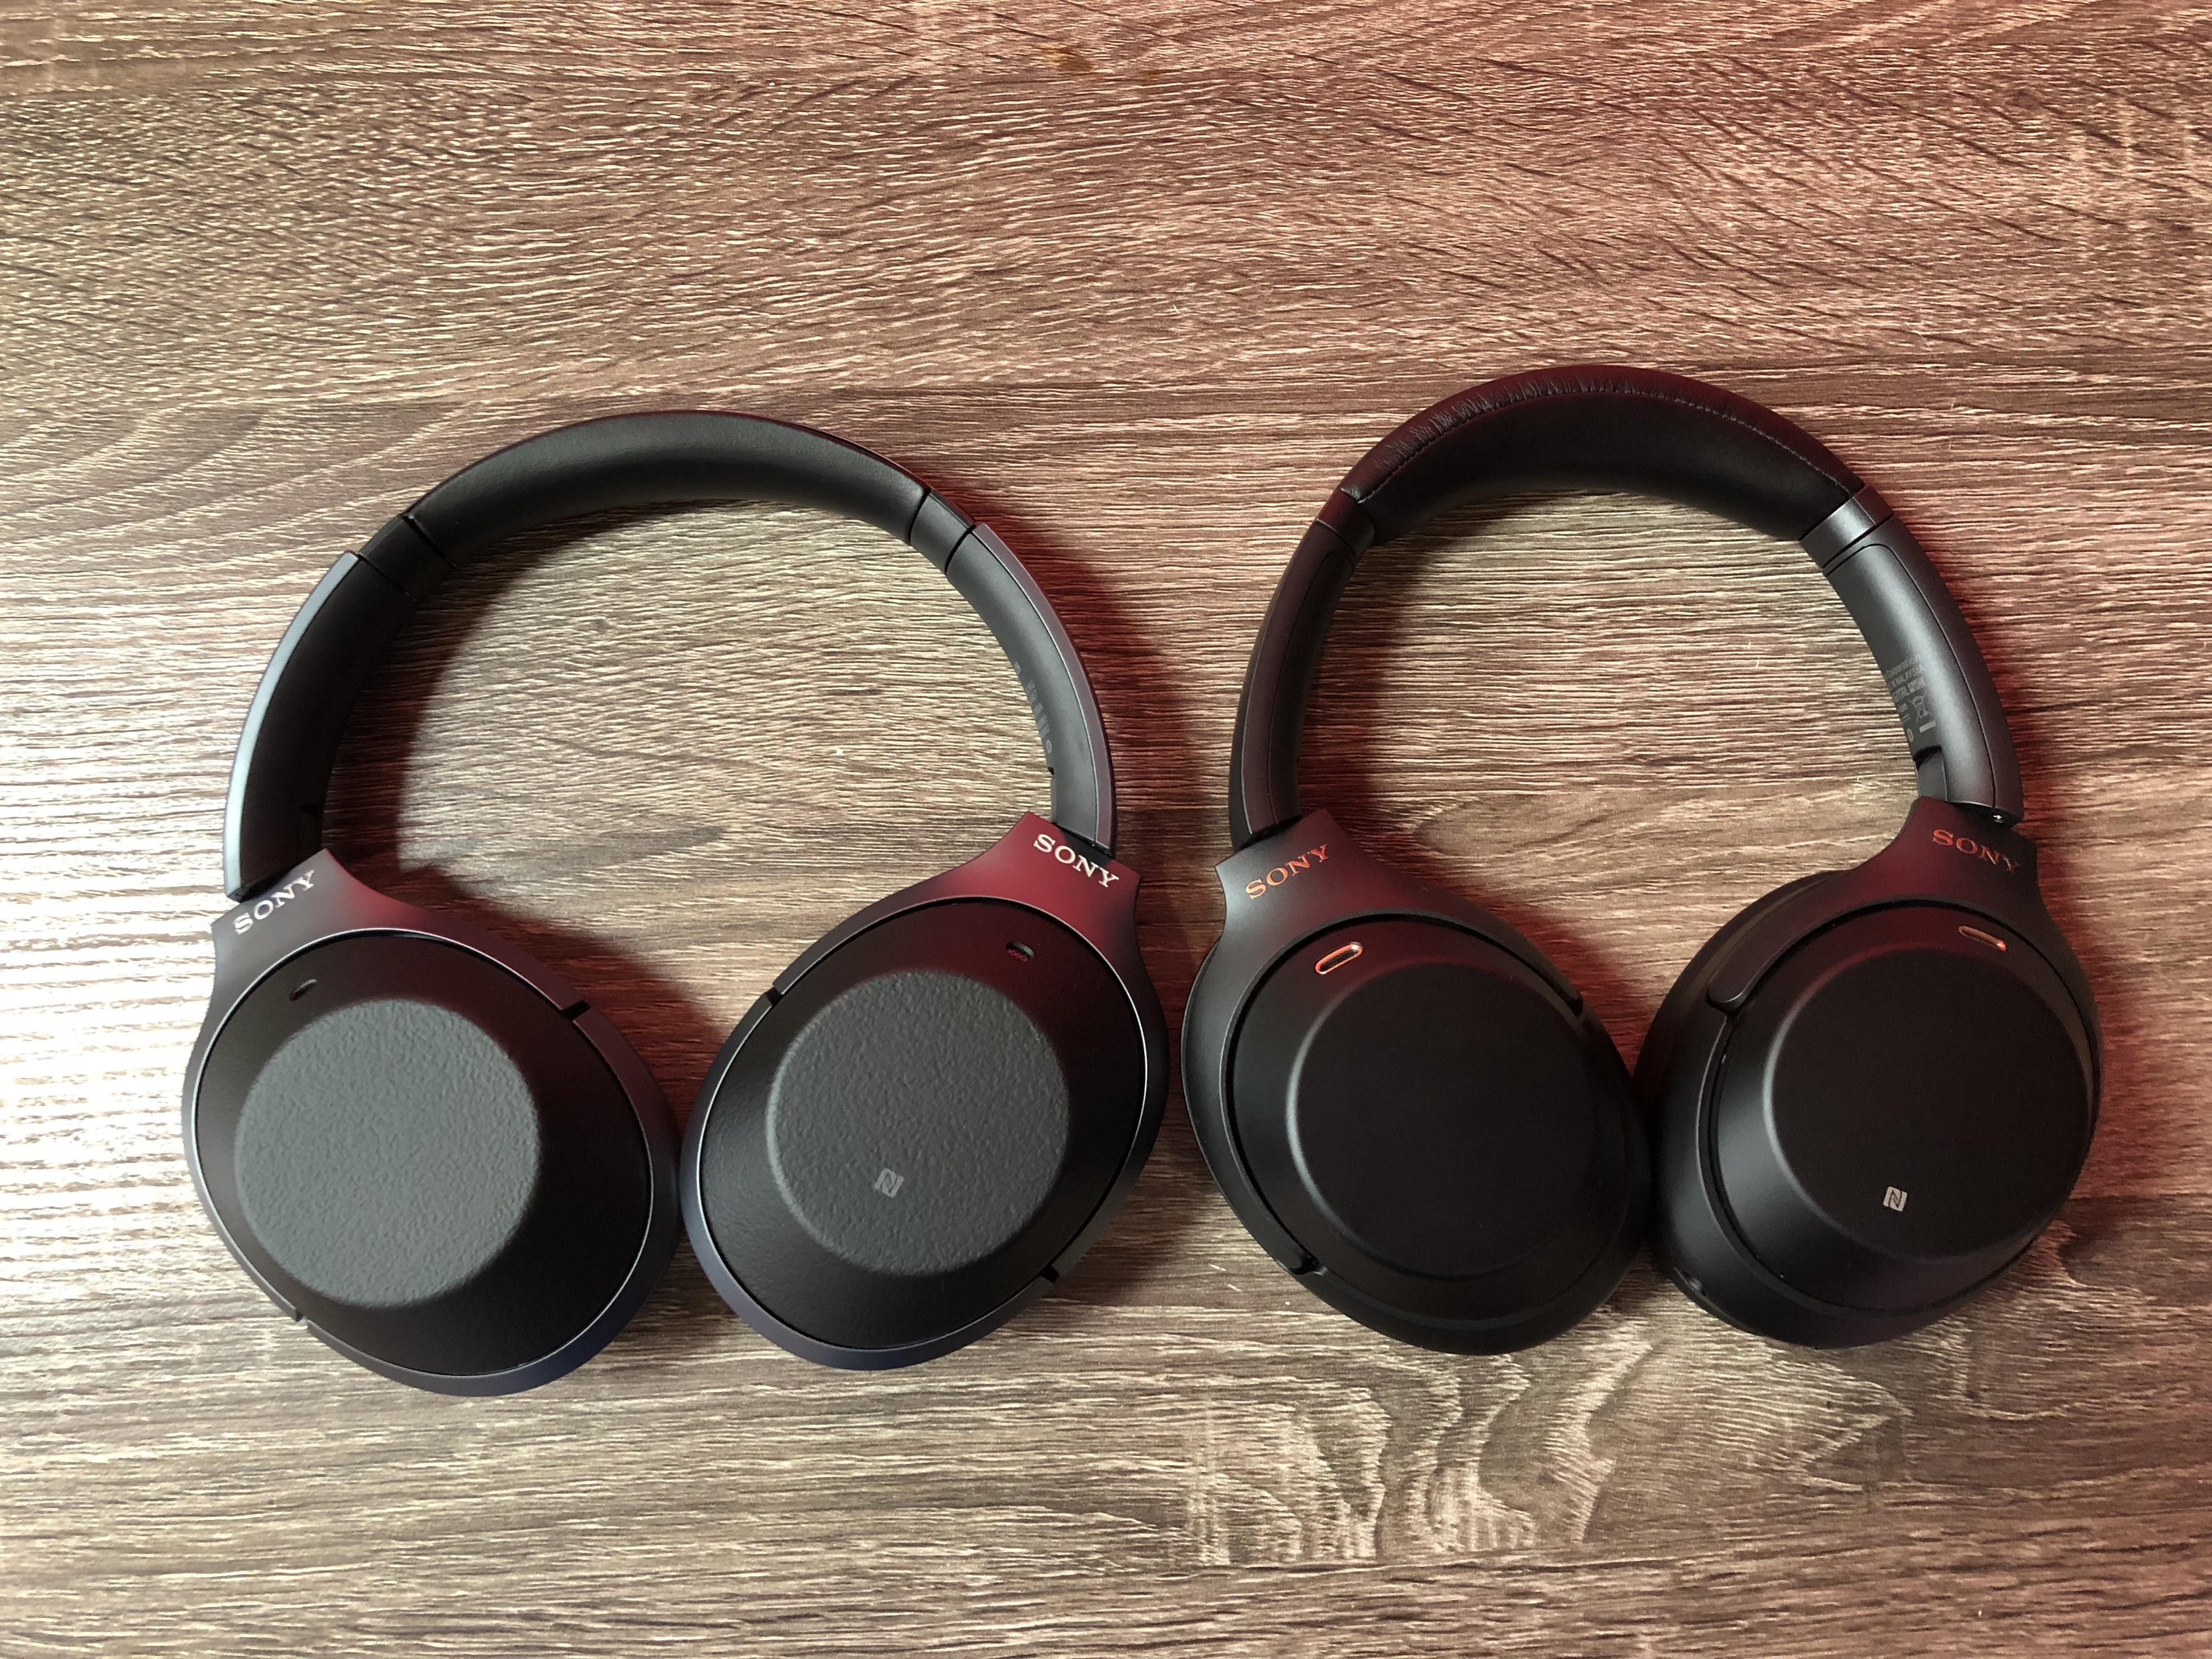 Xperia 1 ön siparişleri, Sony'nin en yeni premium kulaklıklarıyla geliyor